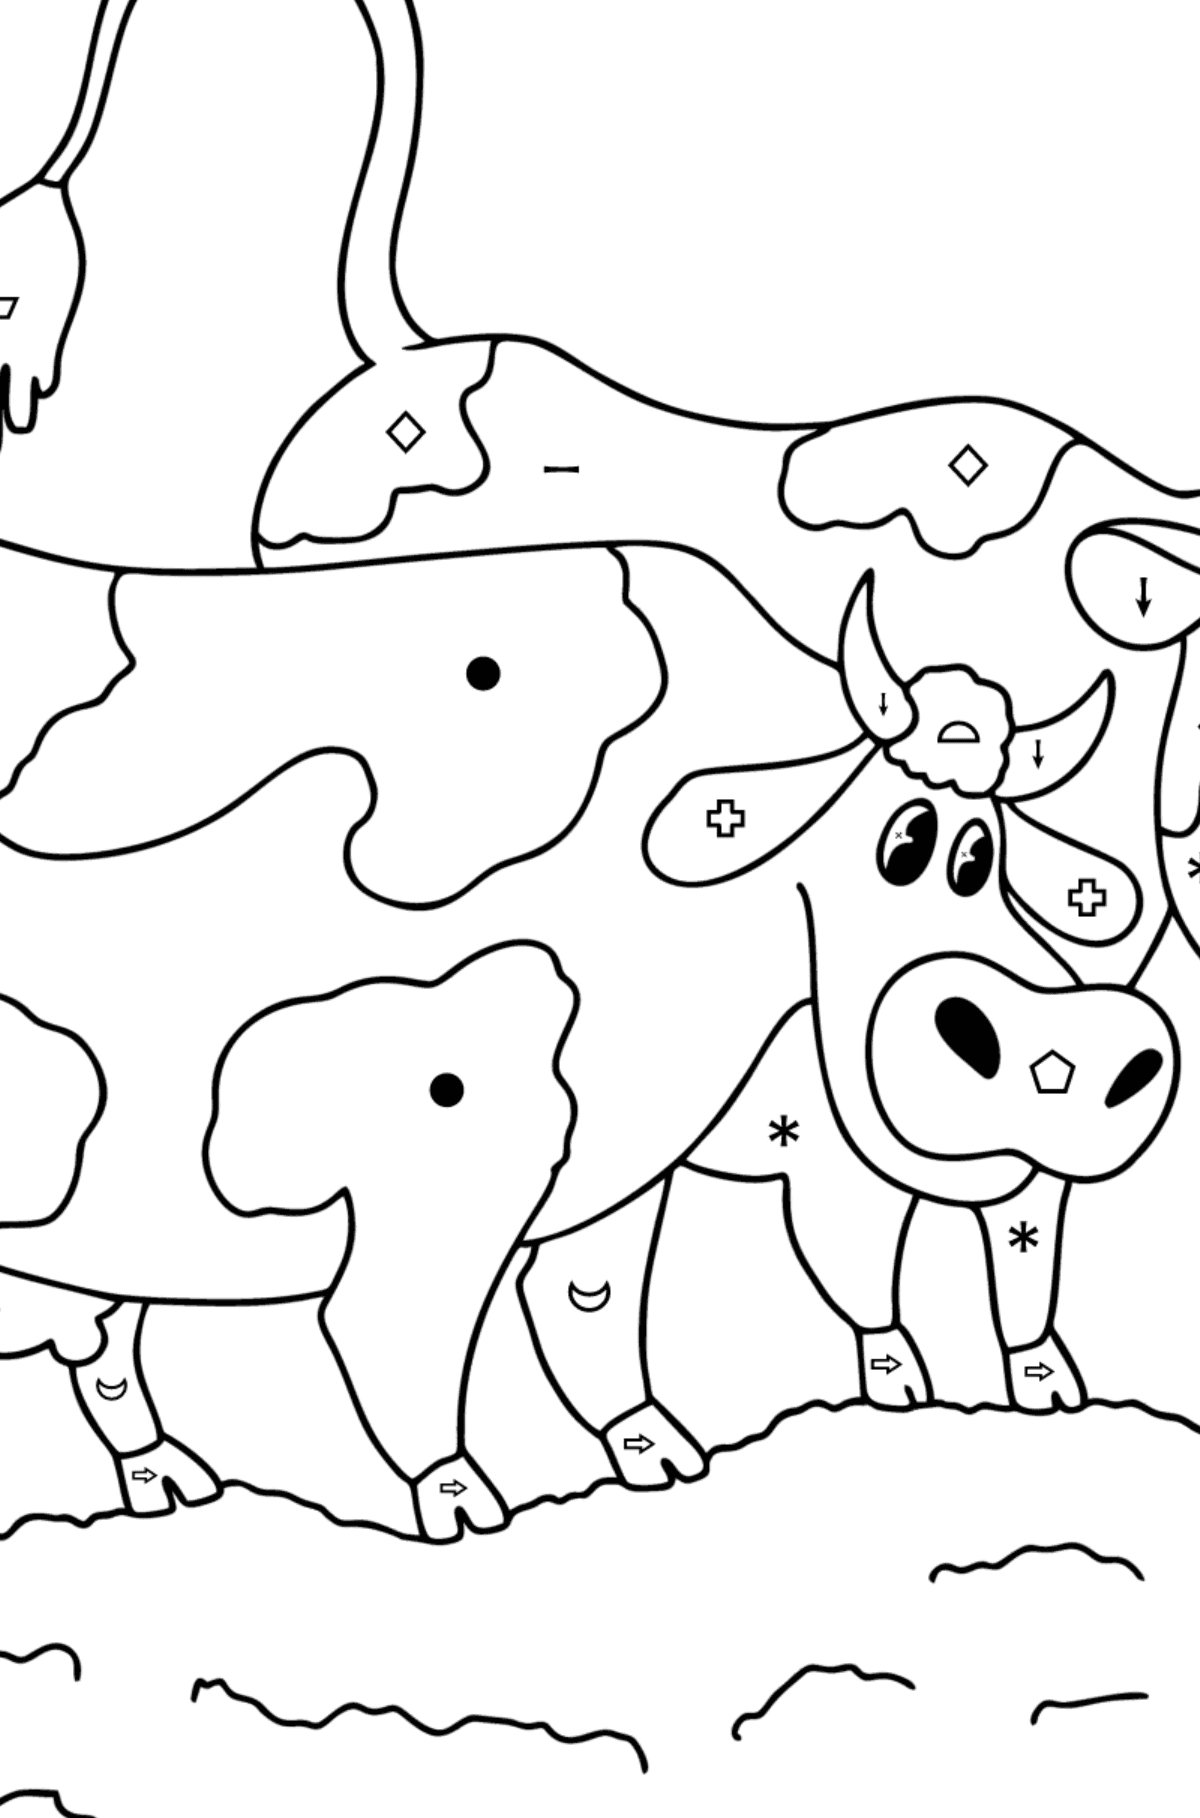 Tegning til fargelegging To kyr på enga - Fargelegge etter symboler og geometriske former for barn